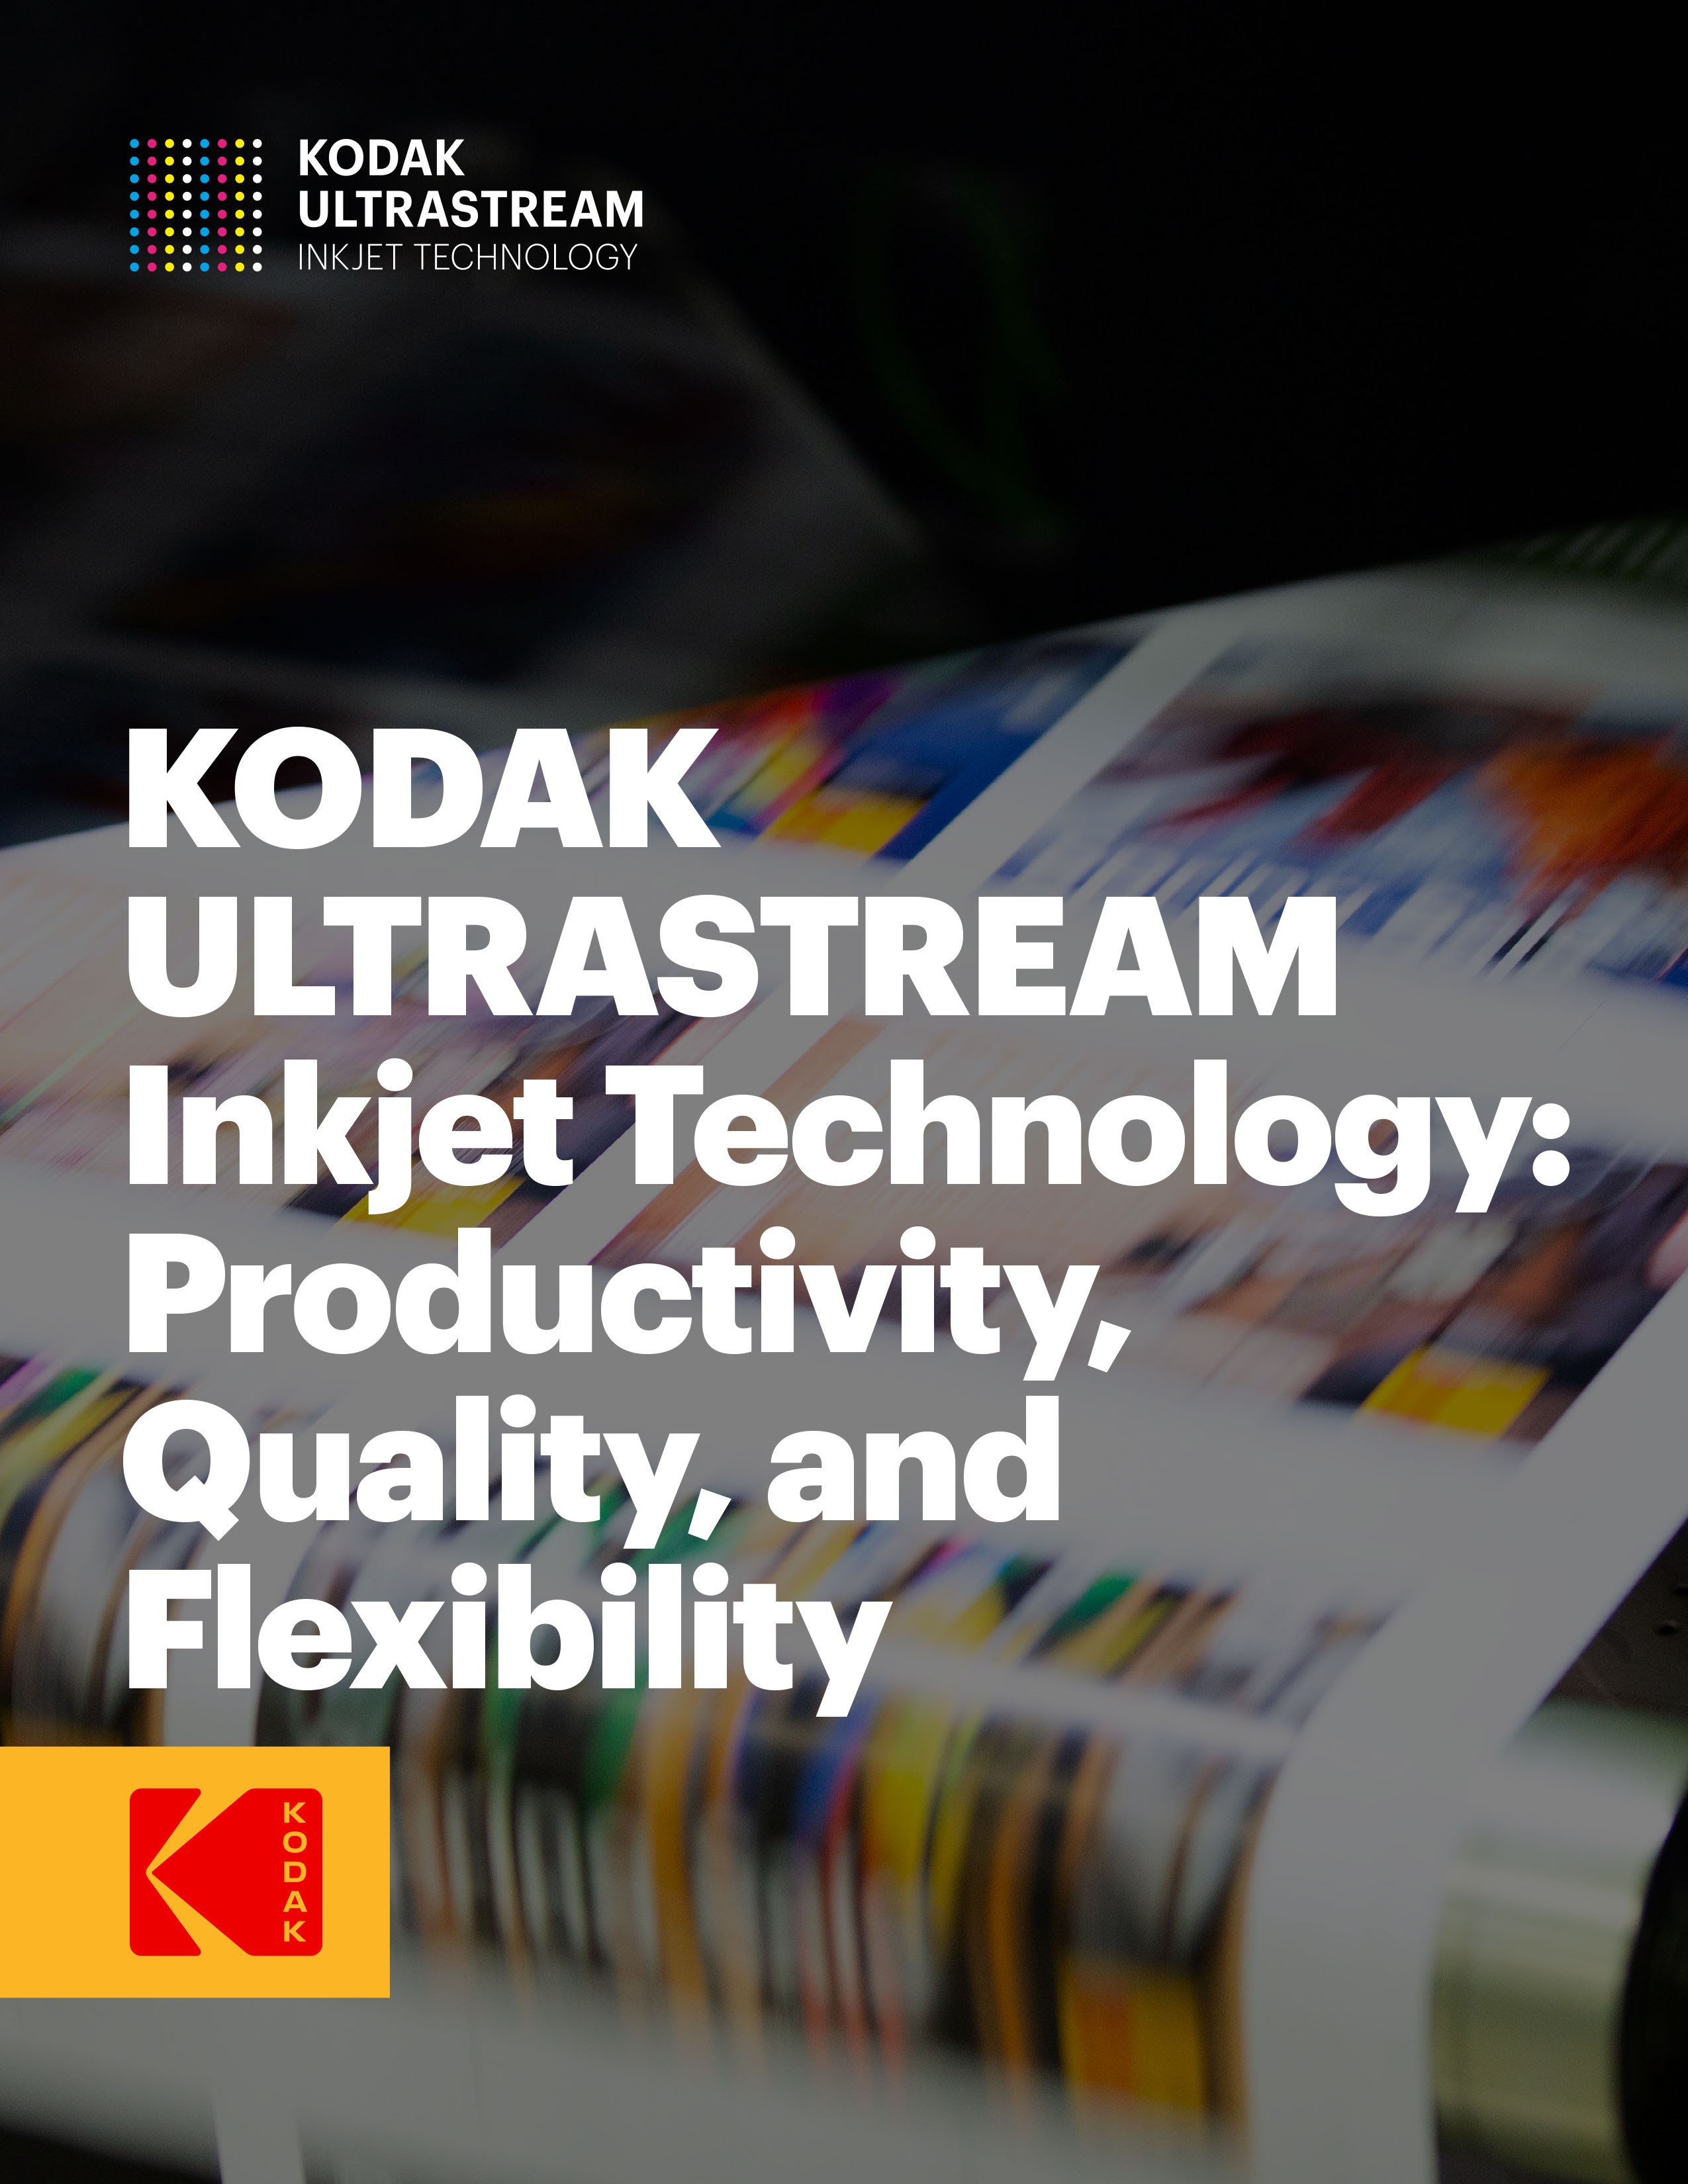 KODAK ULTRASTREAM Inkjet Technology white paper cover